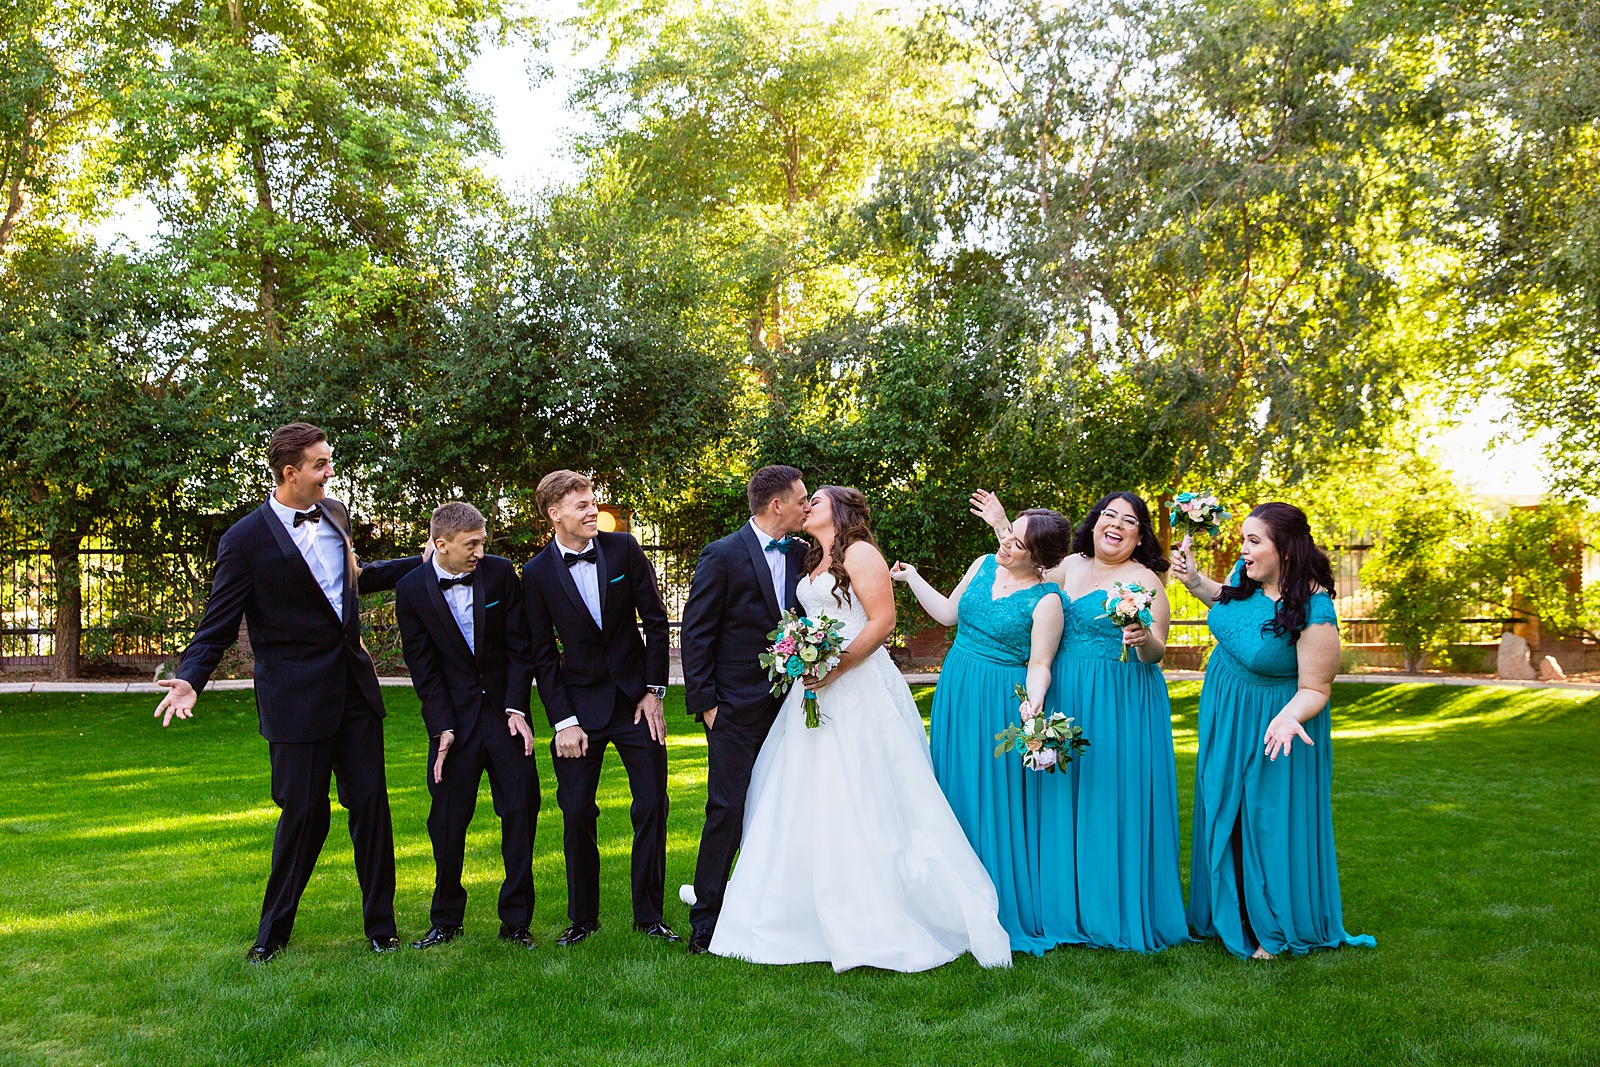 Bridal party having fun together at Stonebridge Manor weding by Arizona wedding photographer PMA Photography.